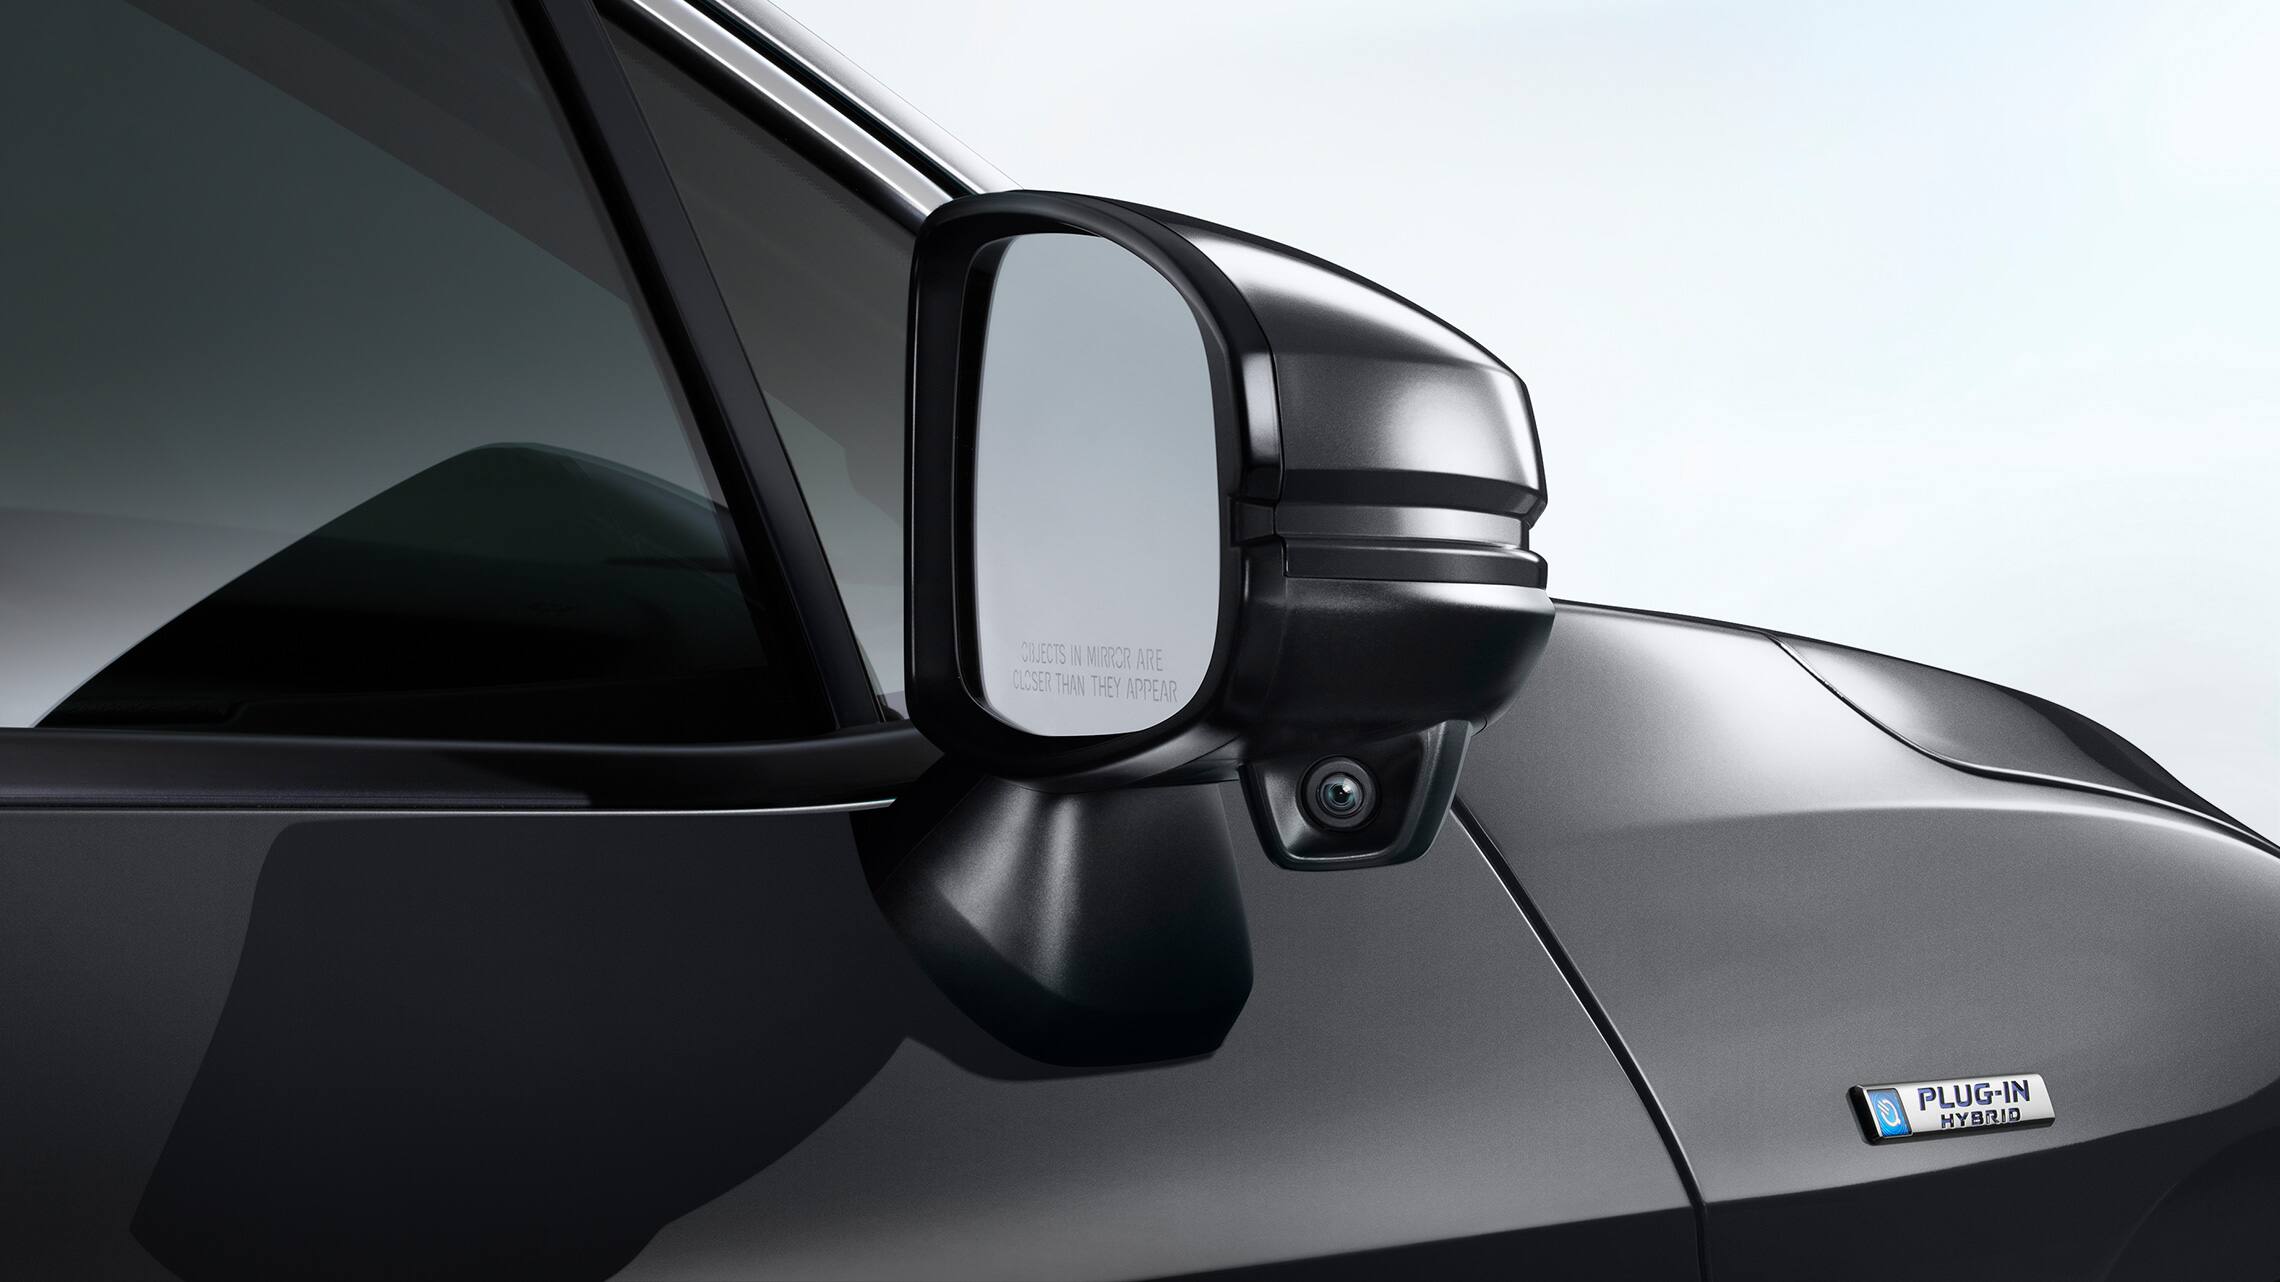 Detail of Honda LaneWatch™ camera on passenger-side mirror.